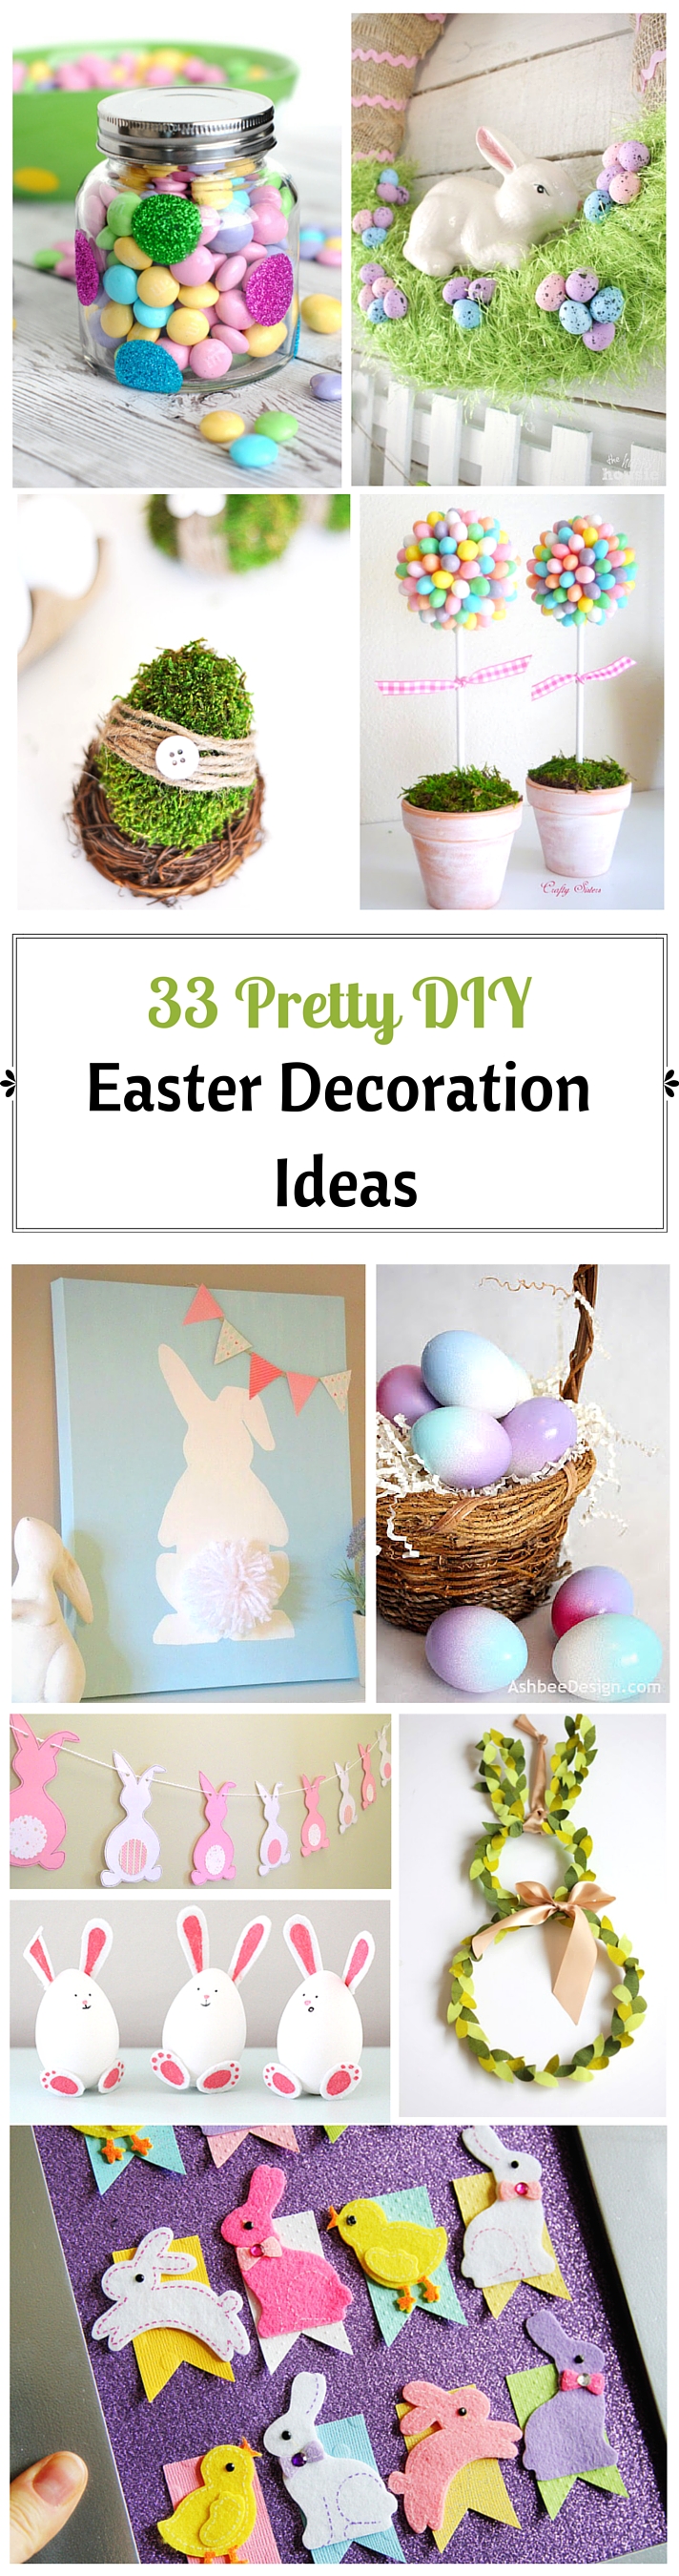 33 Pretty DIY Easter Decoration Ideas